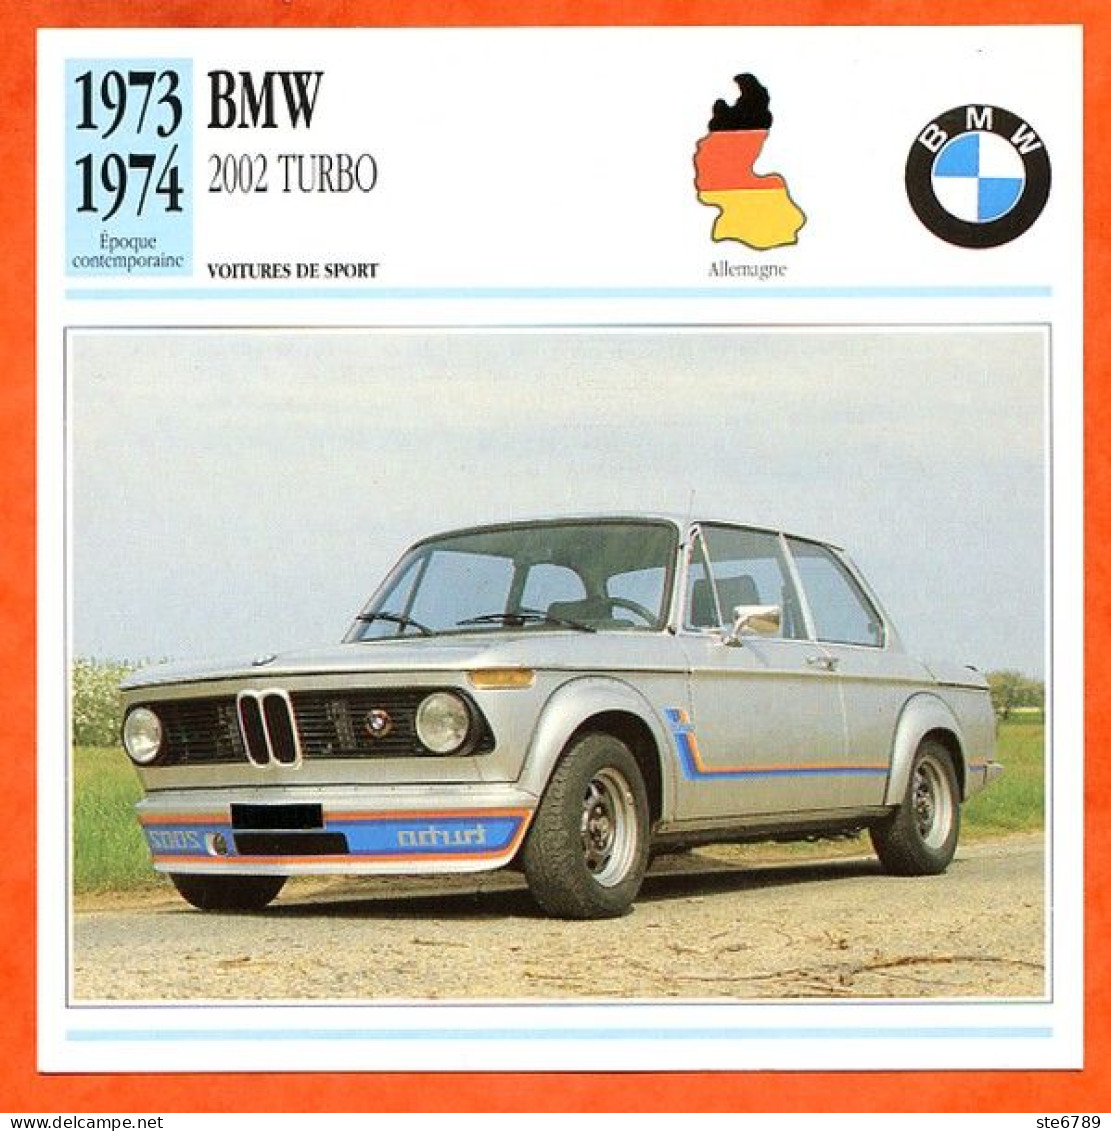 BMW 2002 TURBO 1973 Voiture De Sport Allemagne Fiche Technique Automobile - Coches